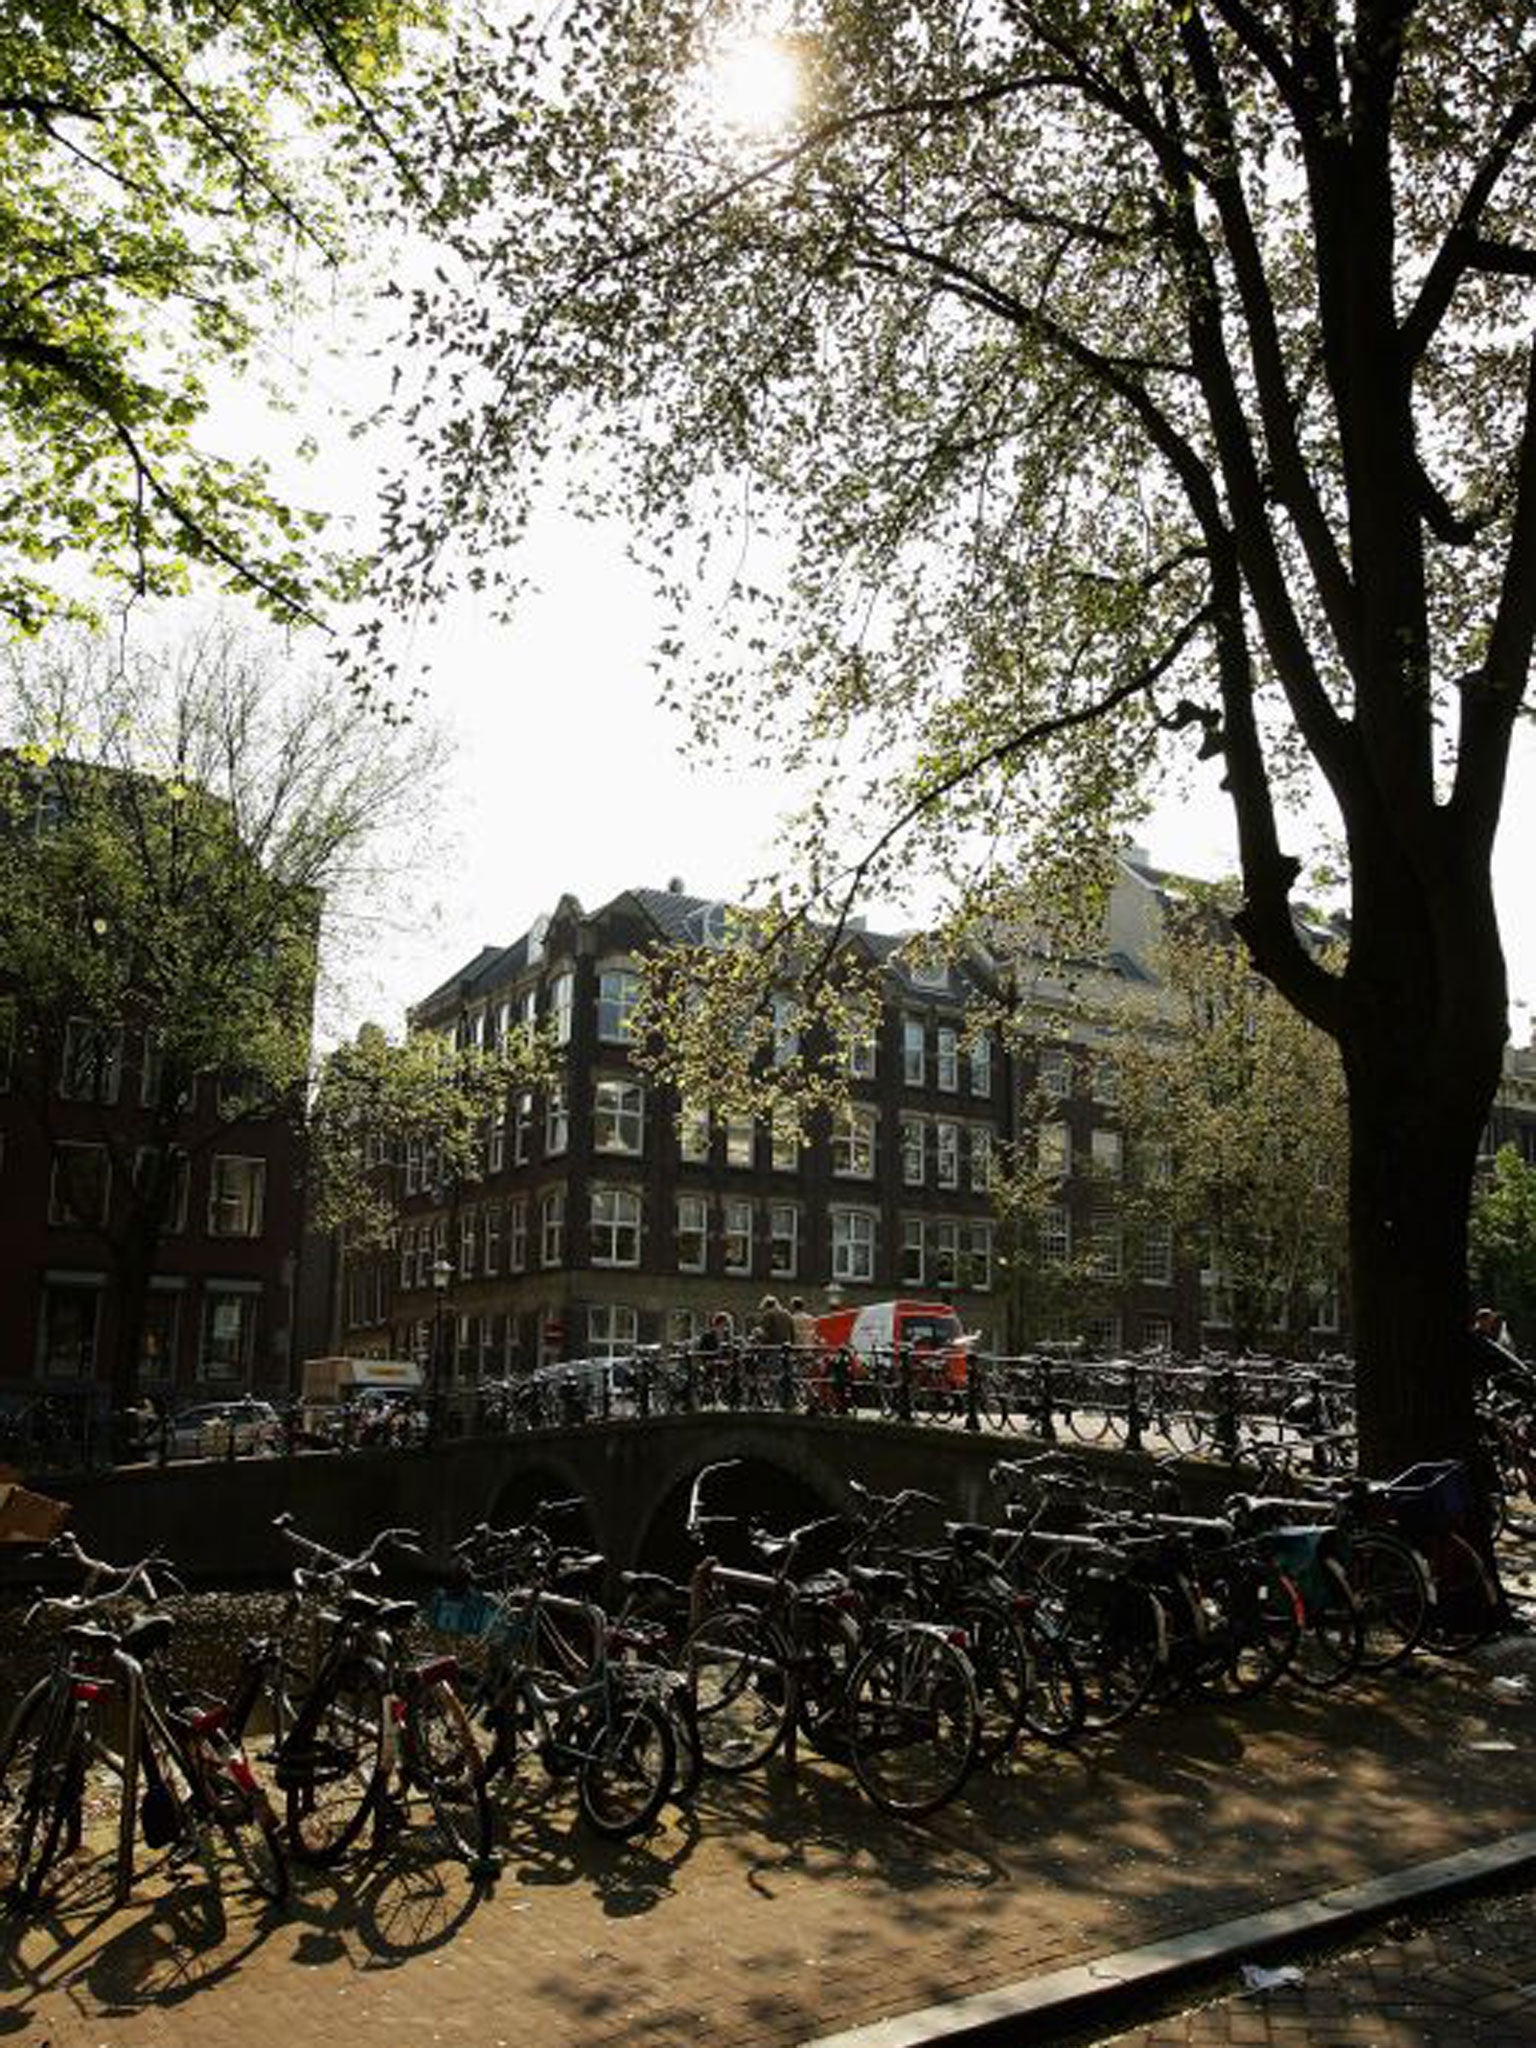 Go Dutch: Amsterdam is an ideal air day-trip